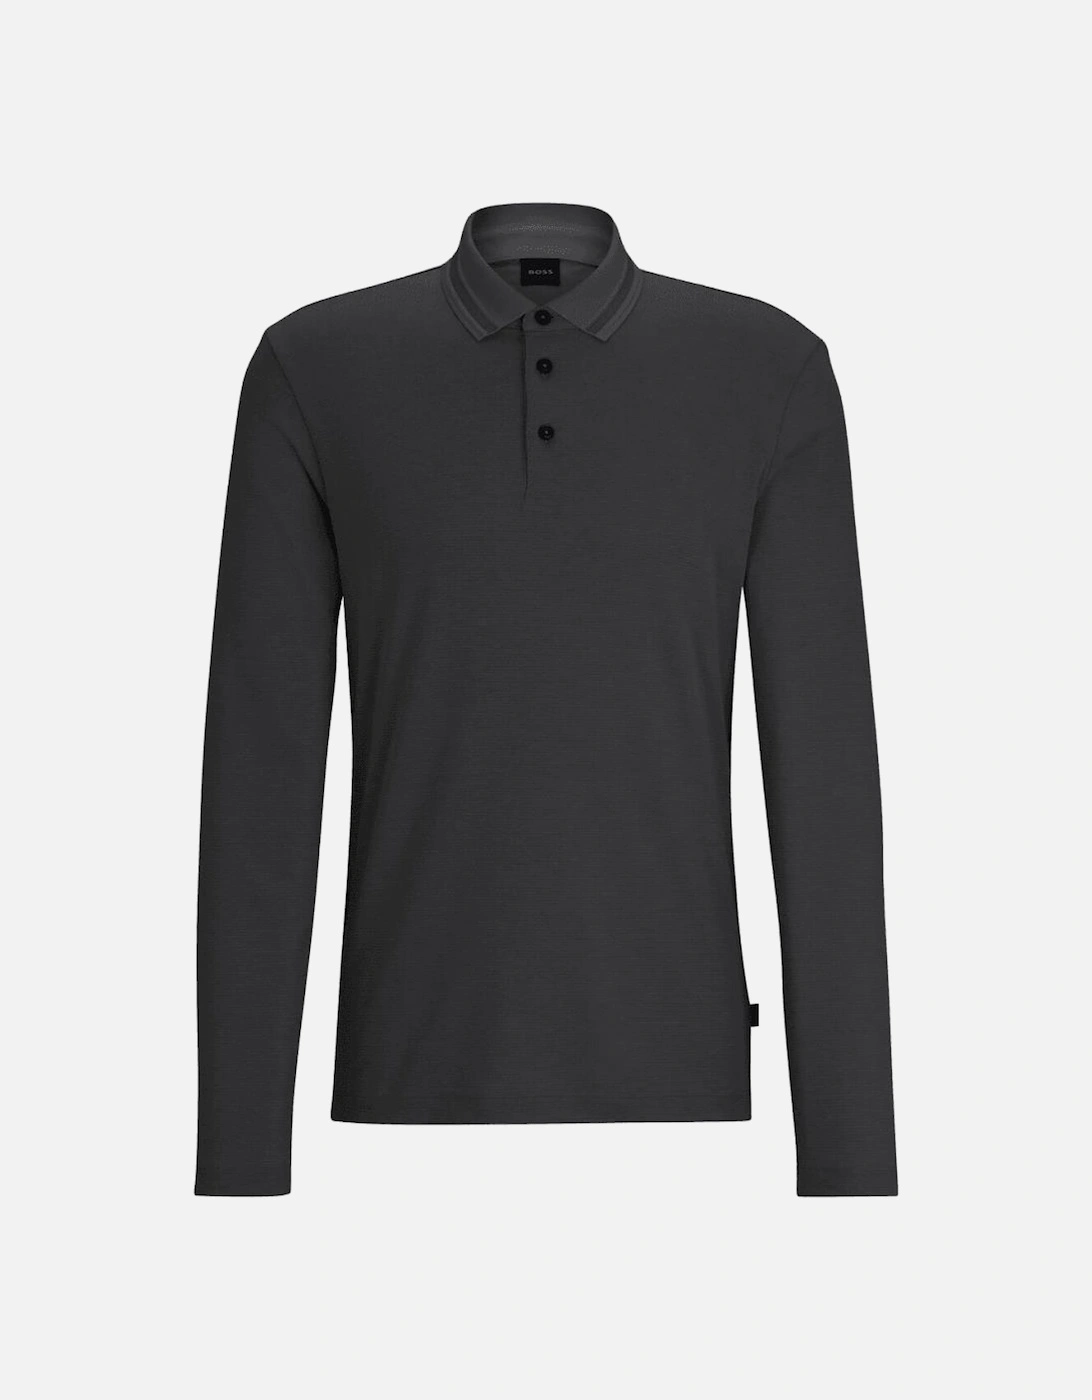 Pleins 23 Slim Fit Long Sleeve Black Polo Shirt, 2 of 1